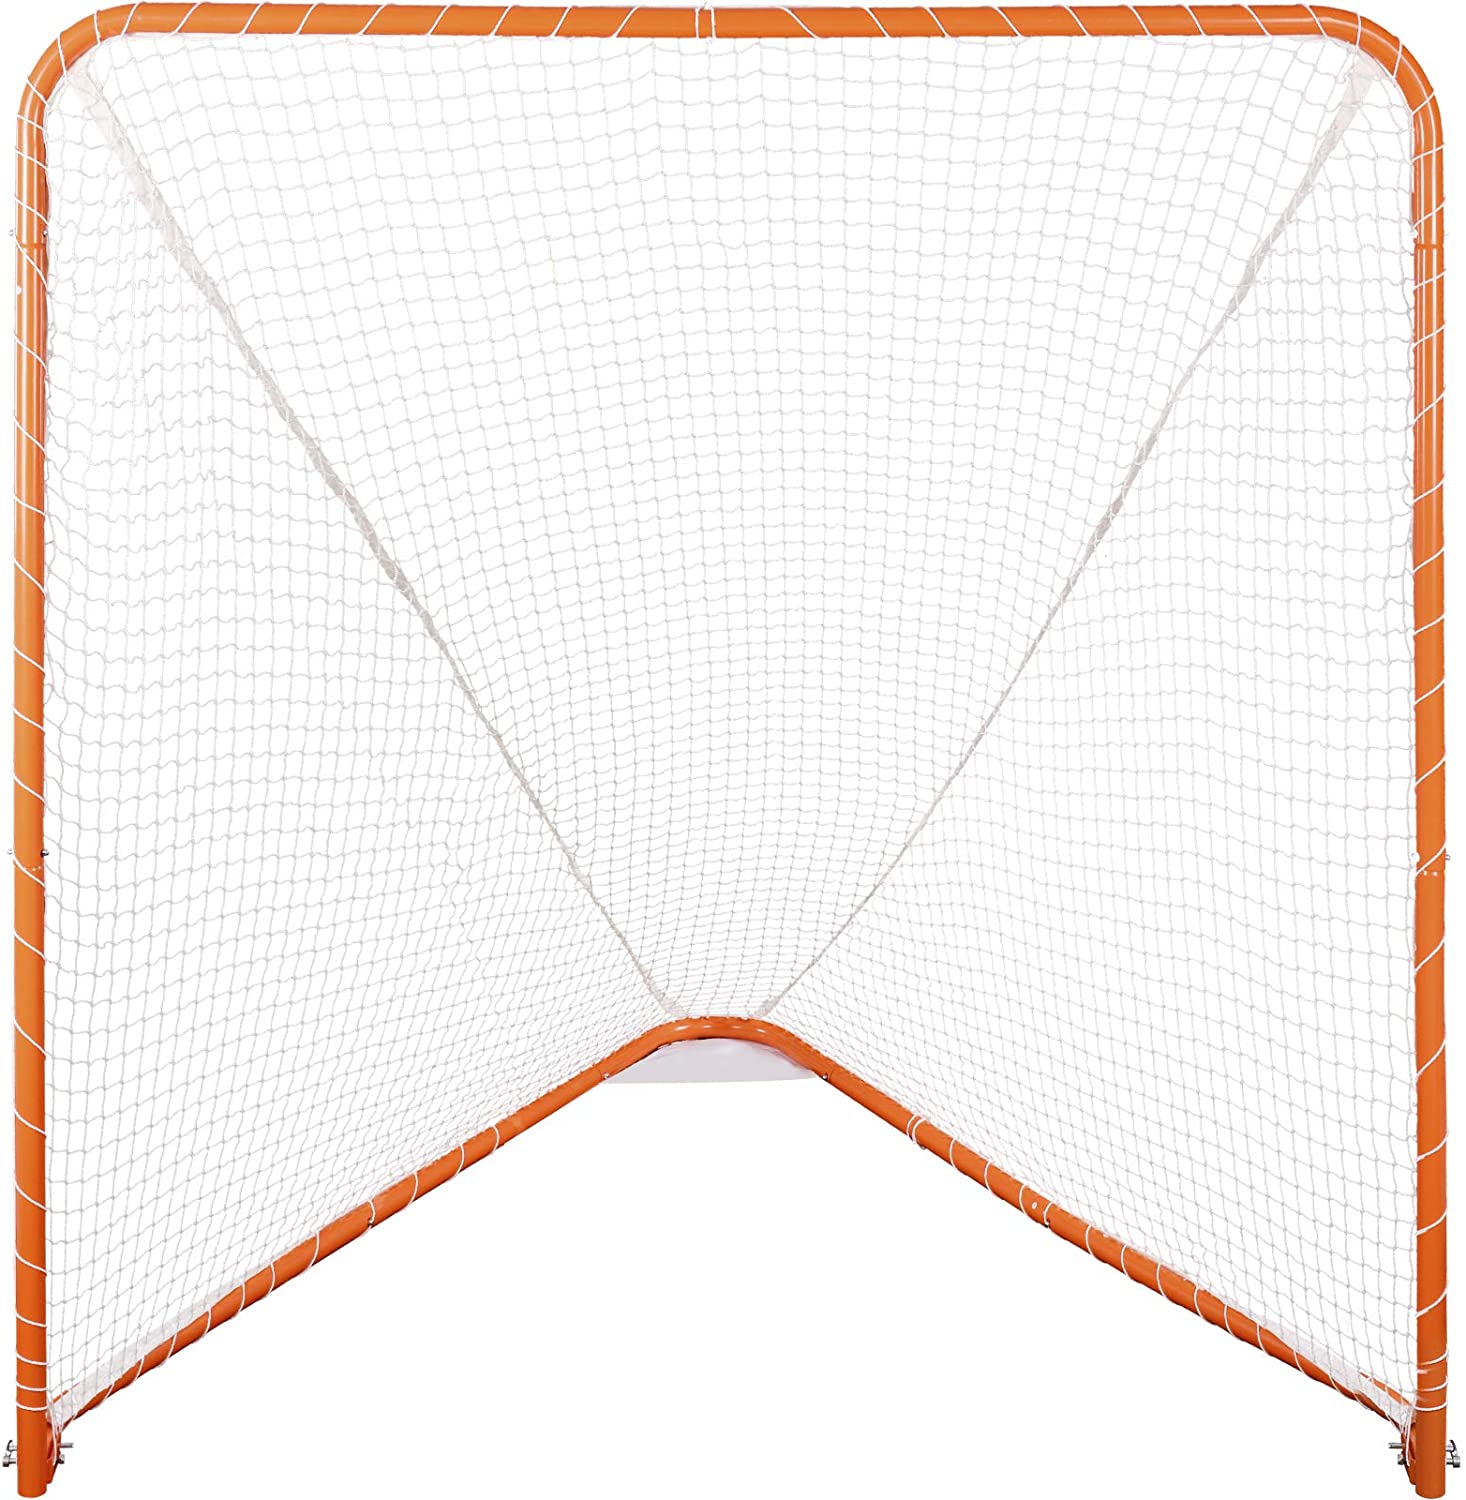 6'x6'Lacrosse Net with Steel Frame Portable Lacrosse Goal